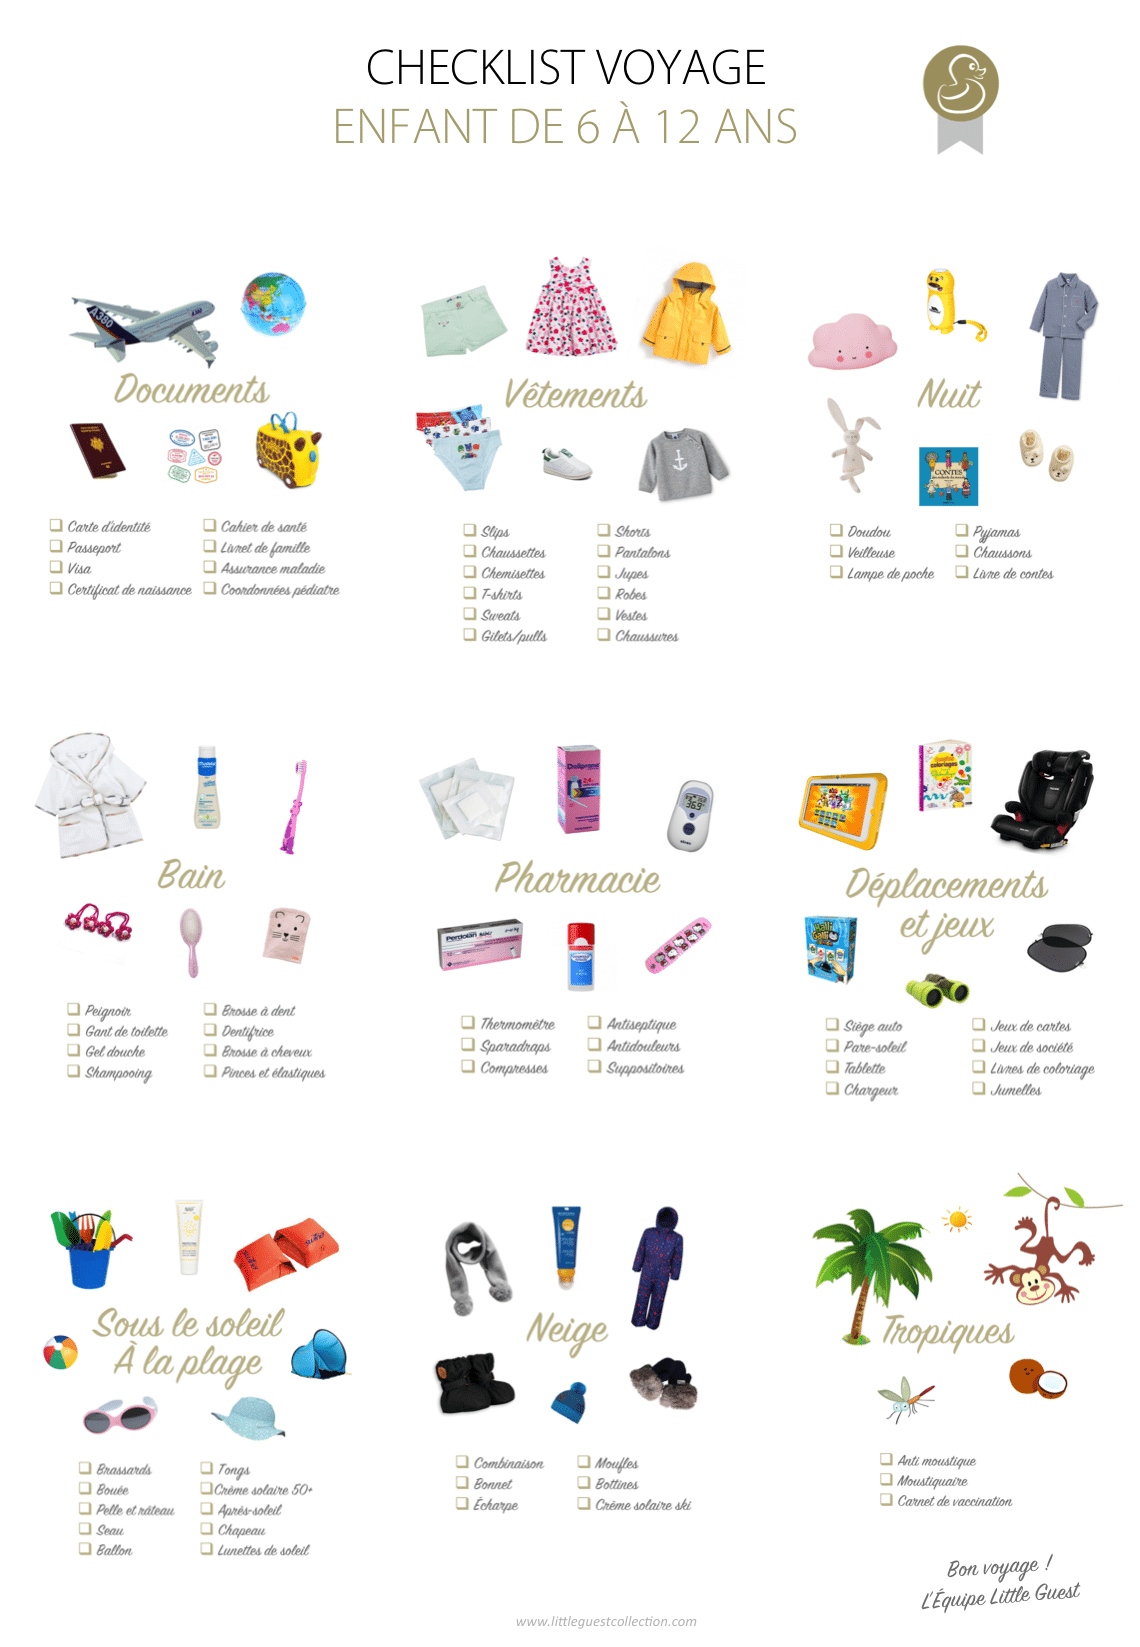 Checklist voyage pour les enfants de 6 à 12 ans (vêtements, documents, nuit, bain, pharmacie, déplacements, jeux, soleil, plage, neige et tropiques)